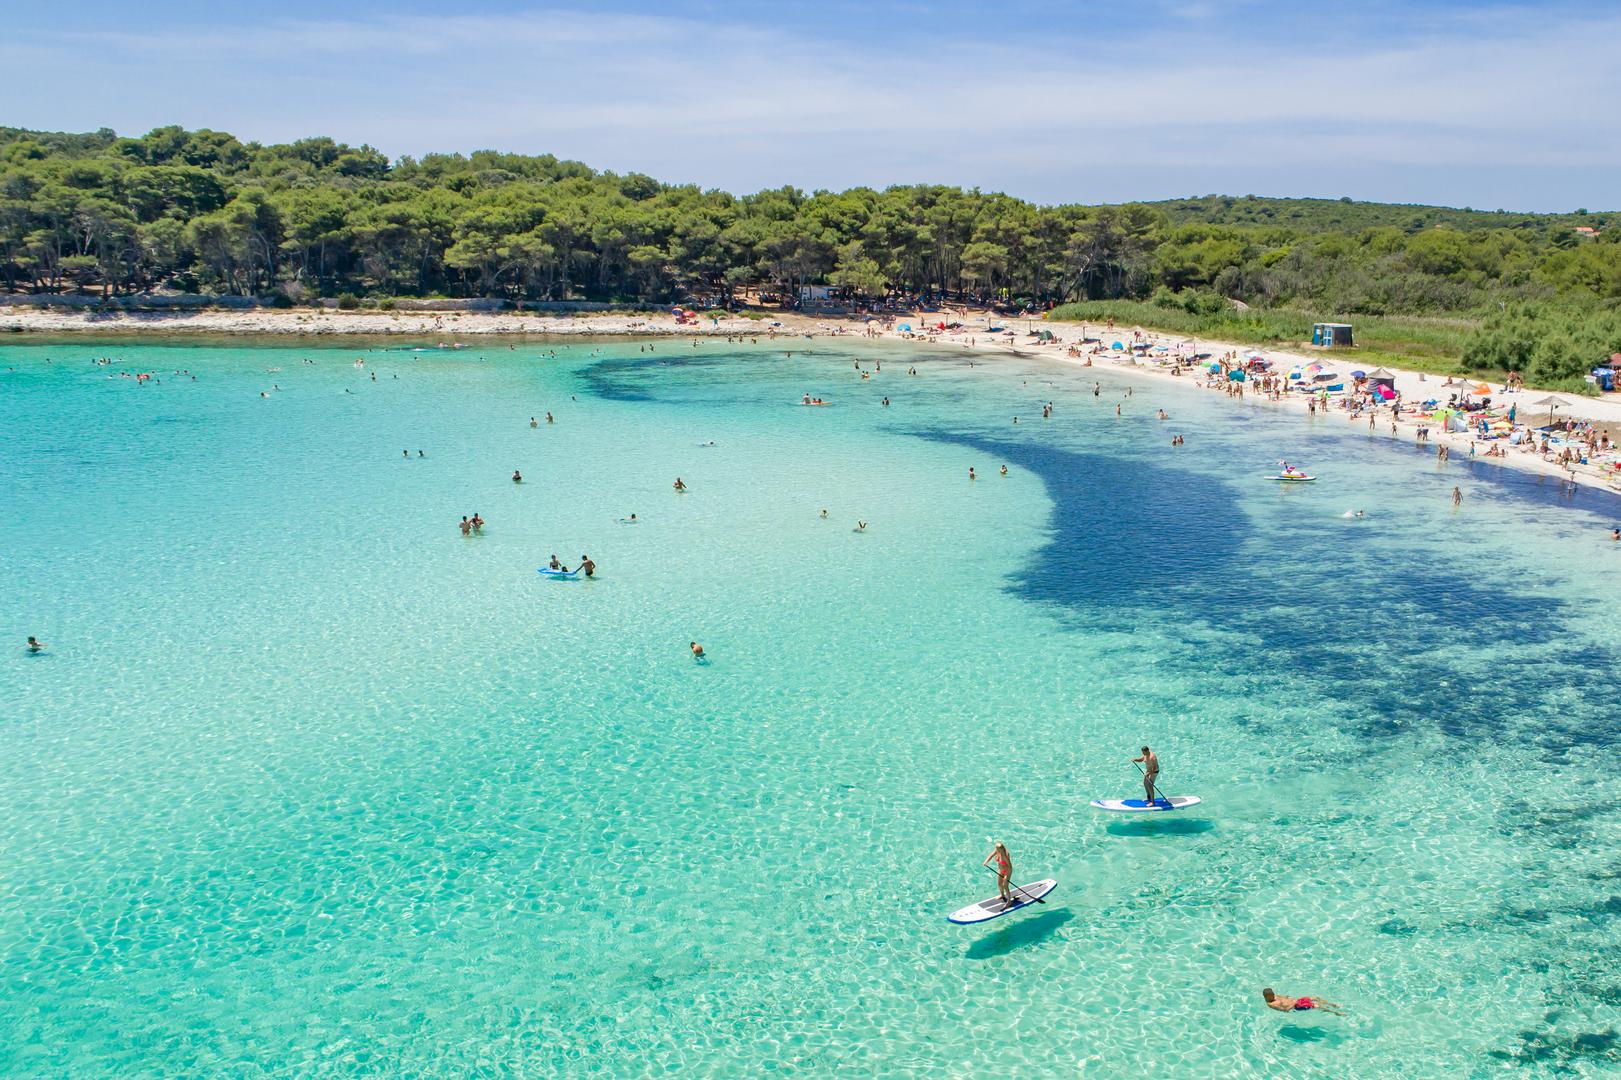 Bistre čiste i plave vode Hrvatske rezultat su kombinacije čimbenika, uključujući visoku koncentraciju soli, zemljopisni položaj i povezanost s Afrikom. Ovi čimbenici doprinose rastu fitoplanktona i uspješnom morskom ekosustavu, čineći hrvatske plaže jedinstvenim odredištem za putnike iz cijelog svijeta.